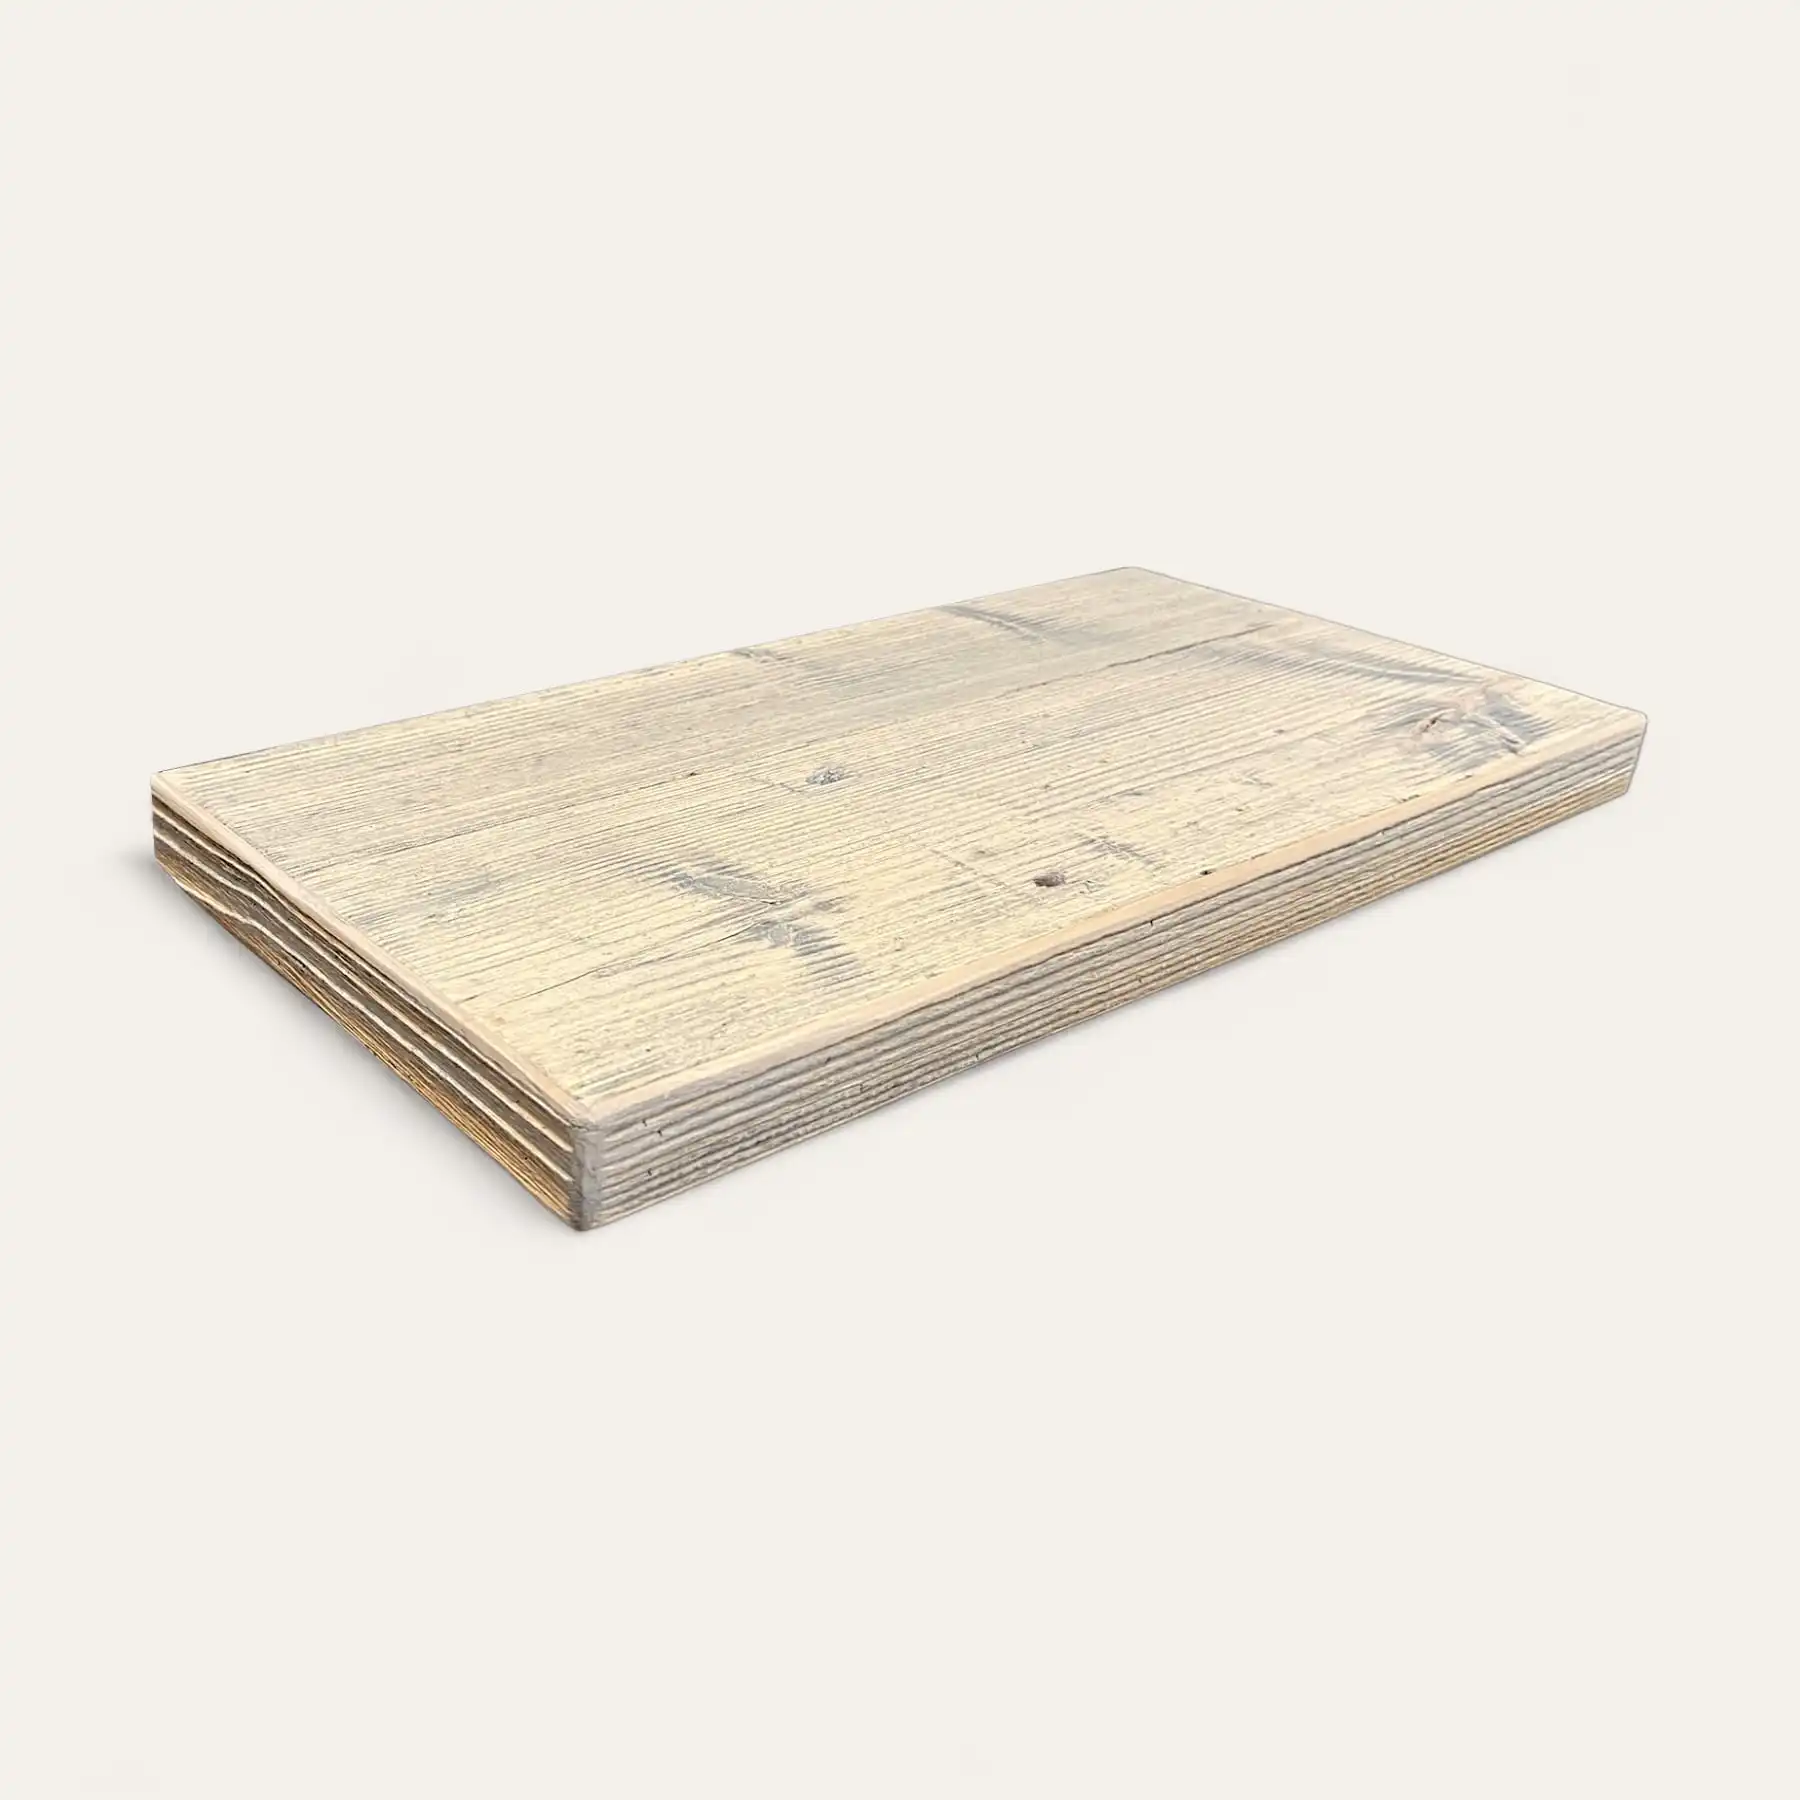  Un morceau rectangulaire de planche de bois de couleur claire avec des motifs de grains visibles, rappelant une étagère rustique, posé sur un fond uni. 